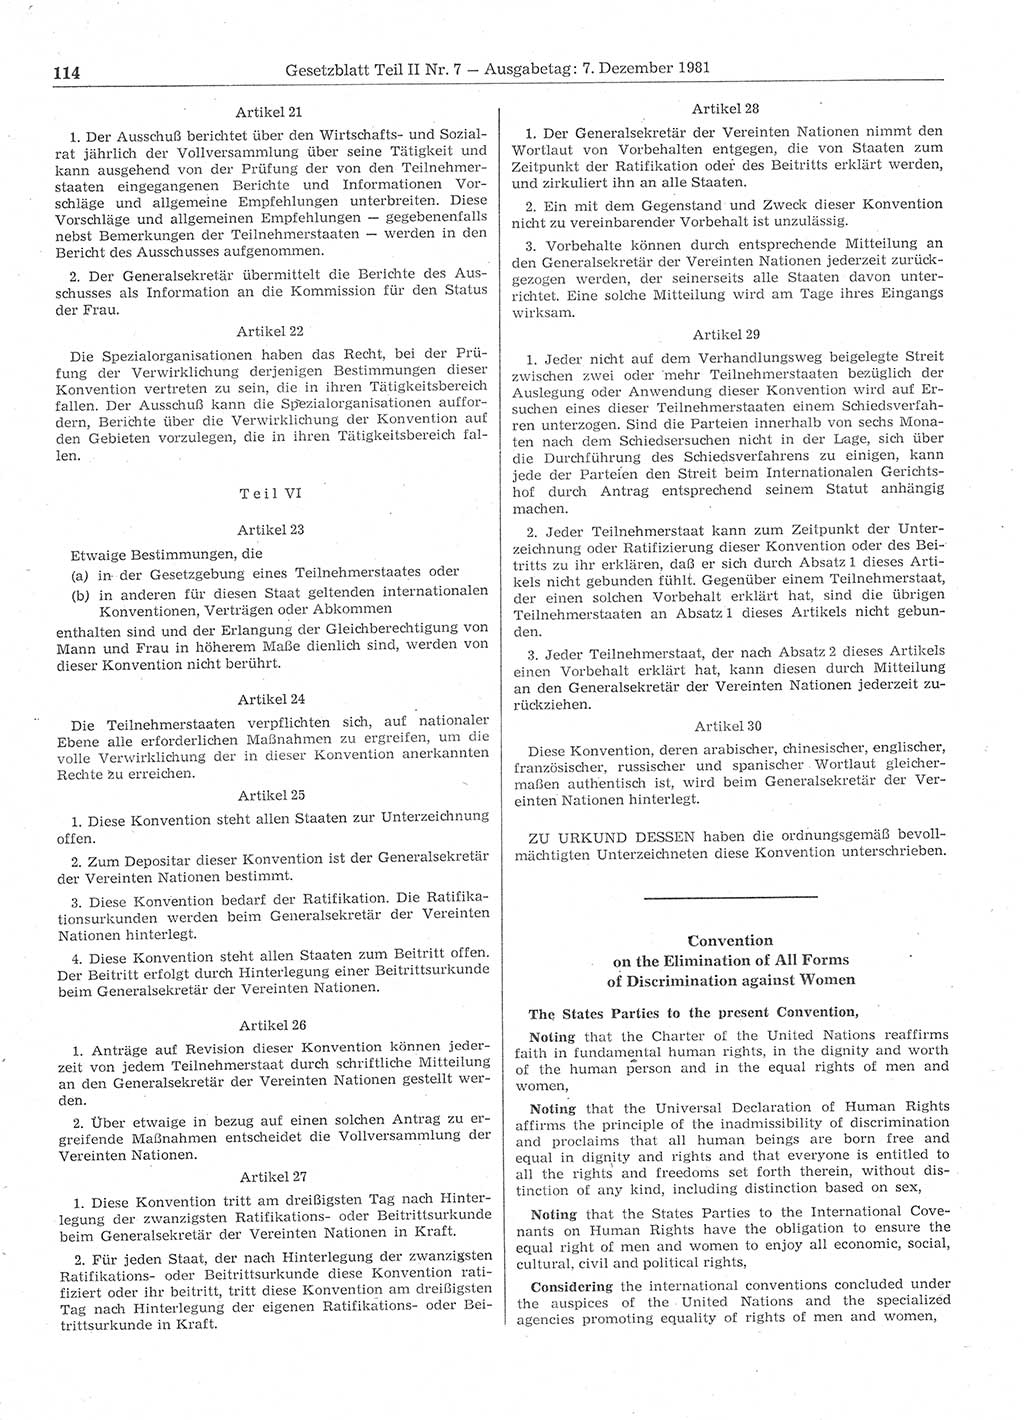 Gesetzblatt (GBl.) der Deutschen Demokratischen Republik (DDR) Teil ⅠⅠ 1981, Seite 114 (GBl. DDR ⅠⅠ 1981, S. 114)